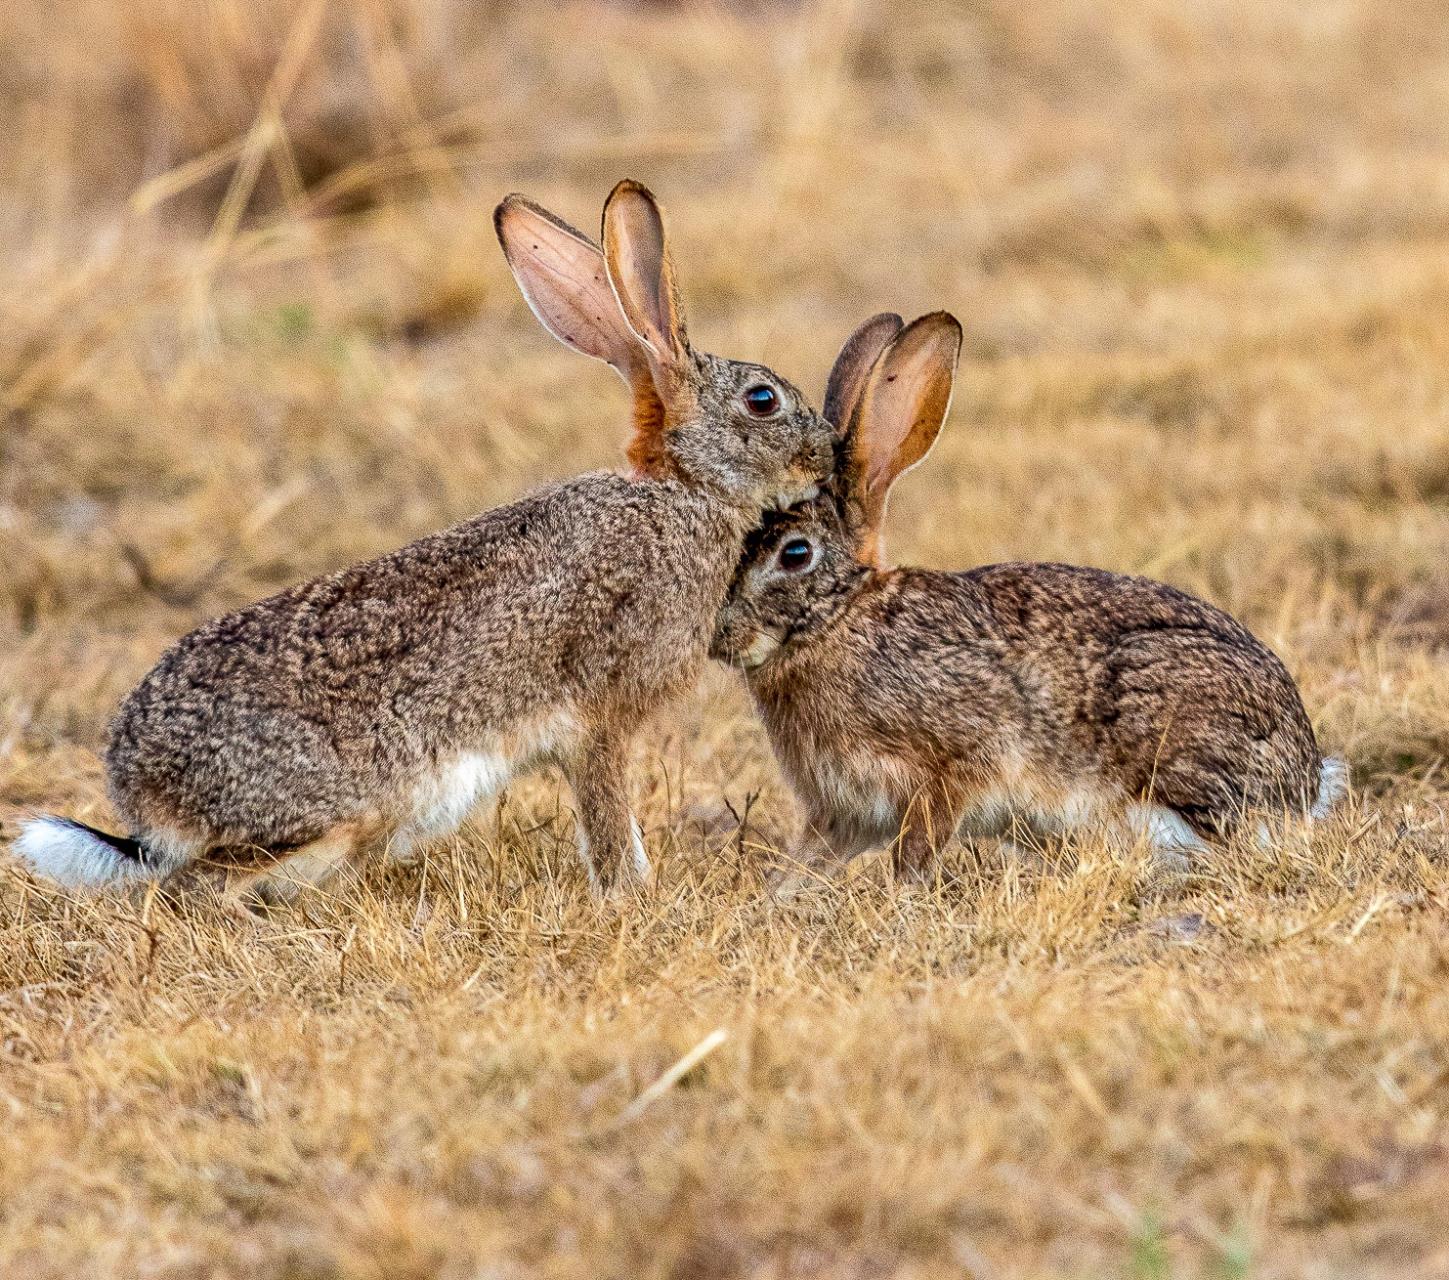 Chapman River Regional Park rabbit control begins